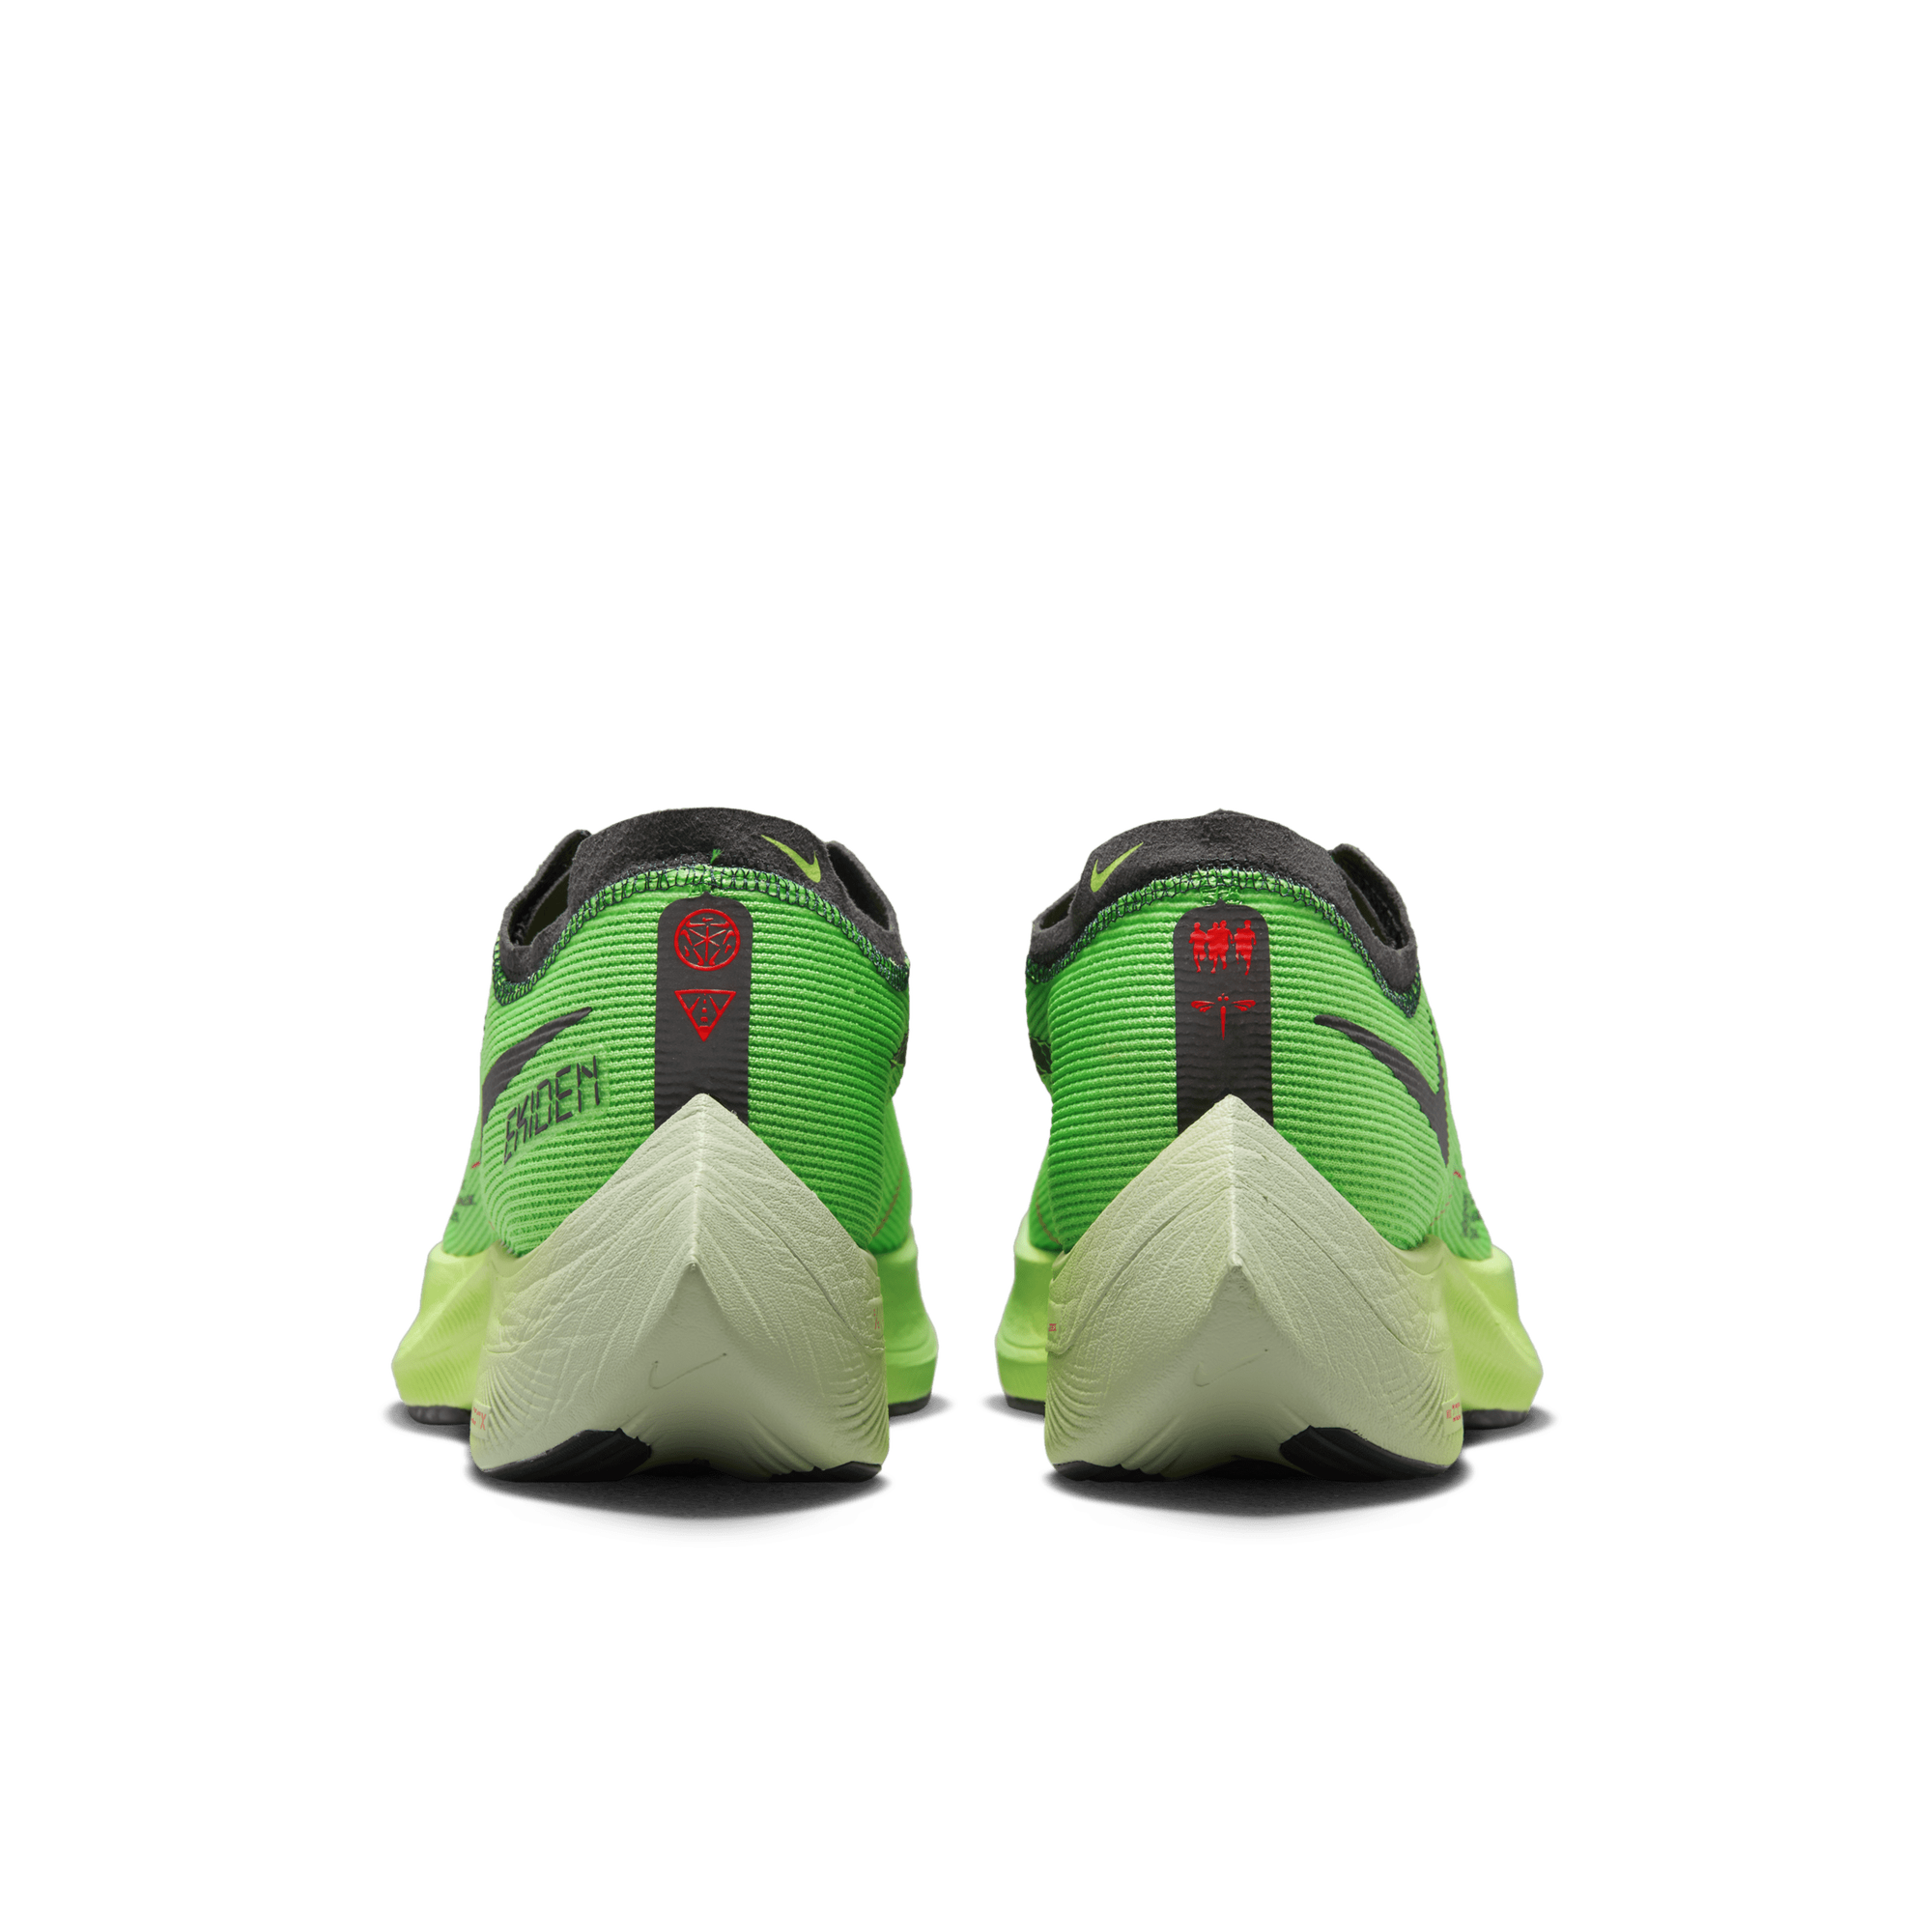 Grave Accesorios pescado ZoomX Vaporfly NEXT% 2Men's Road Racing Shoes in KSA. Nike SA